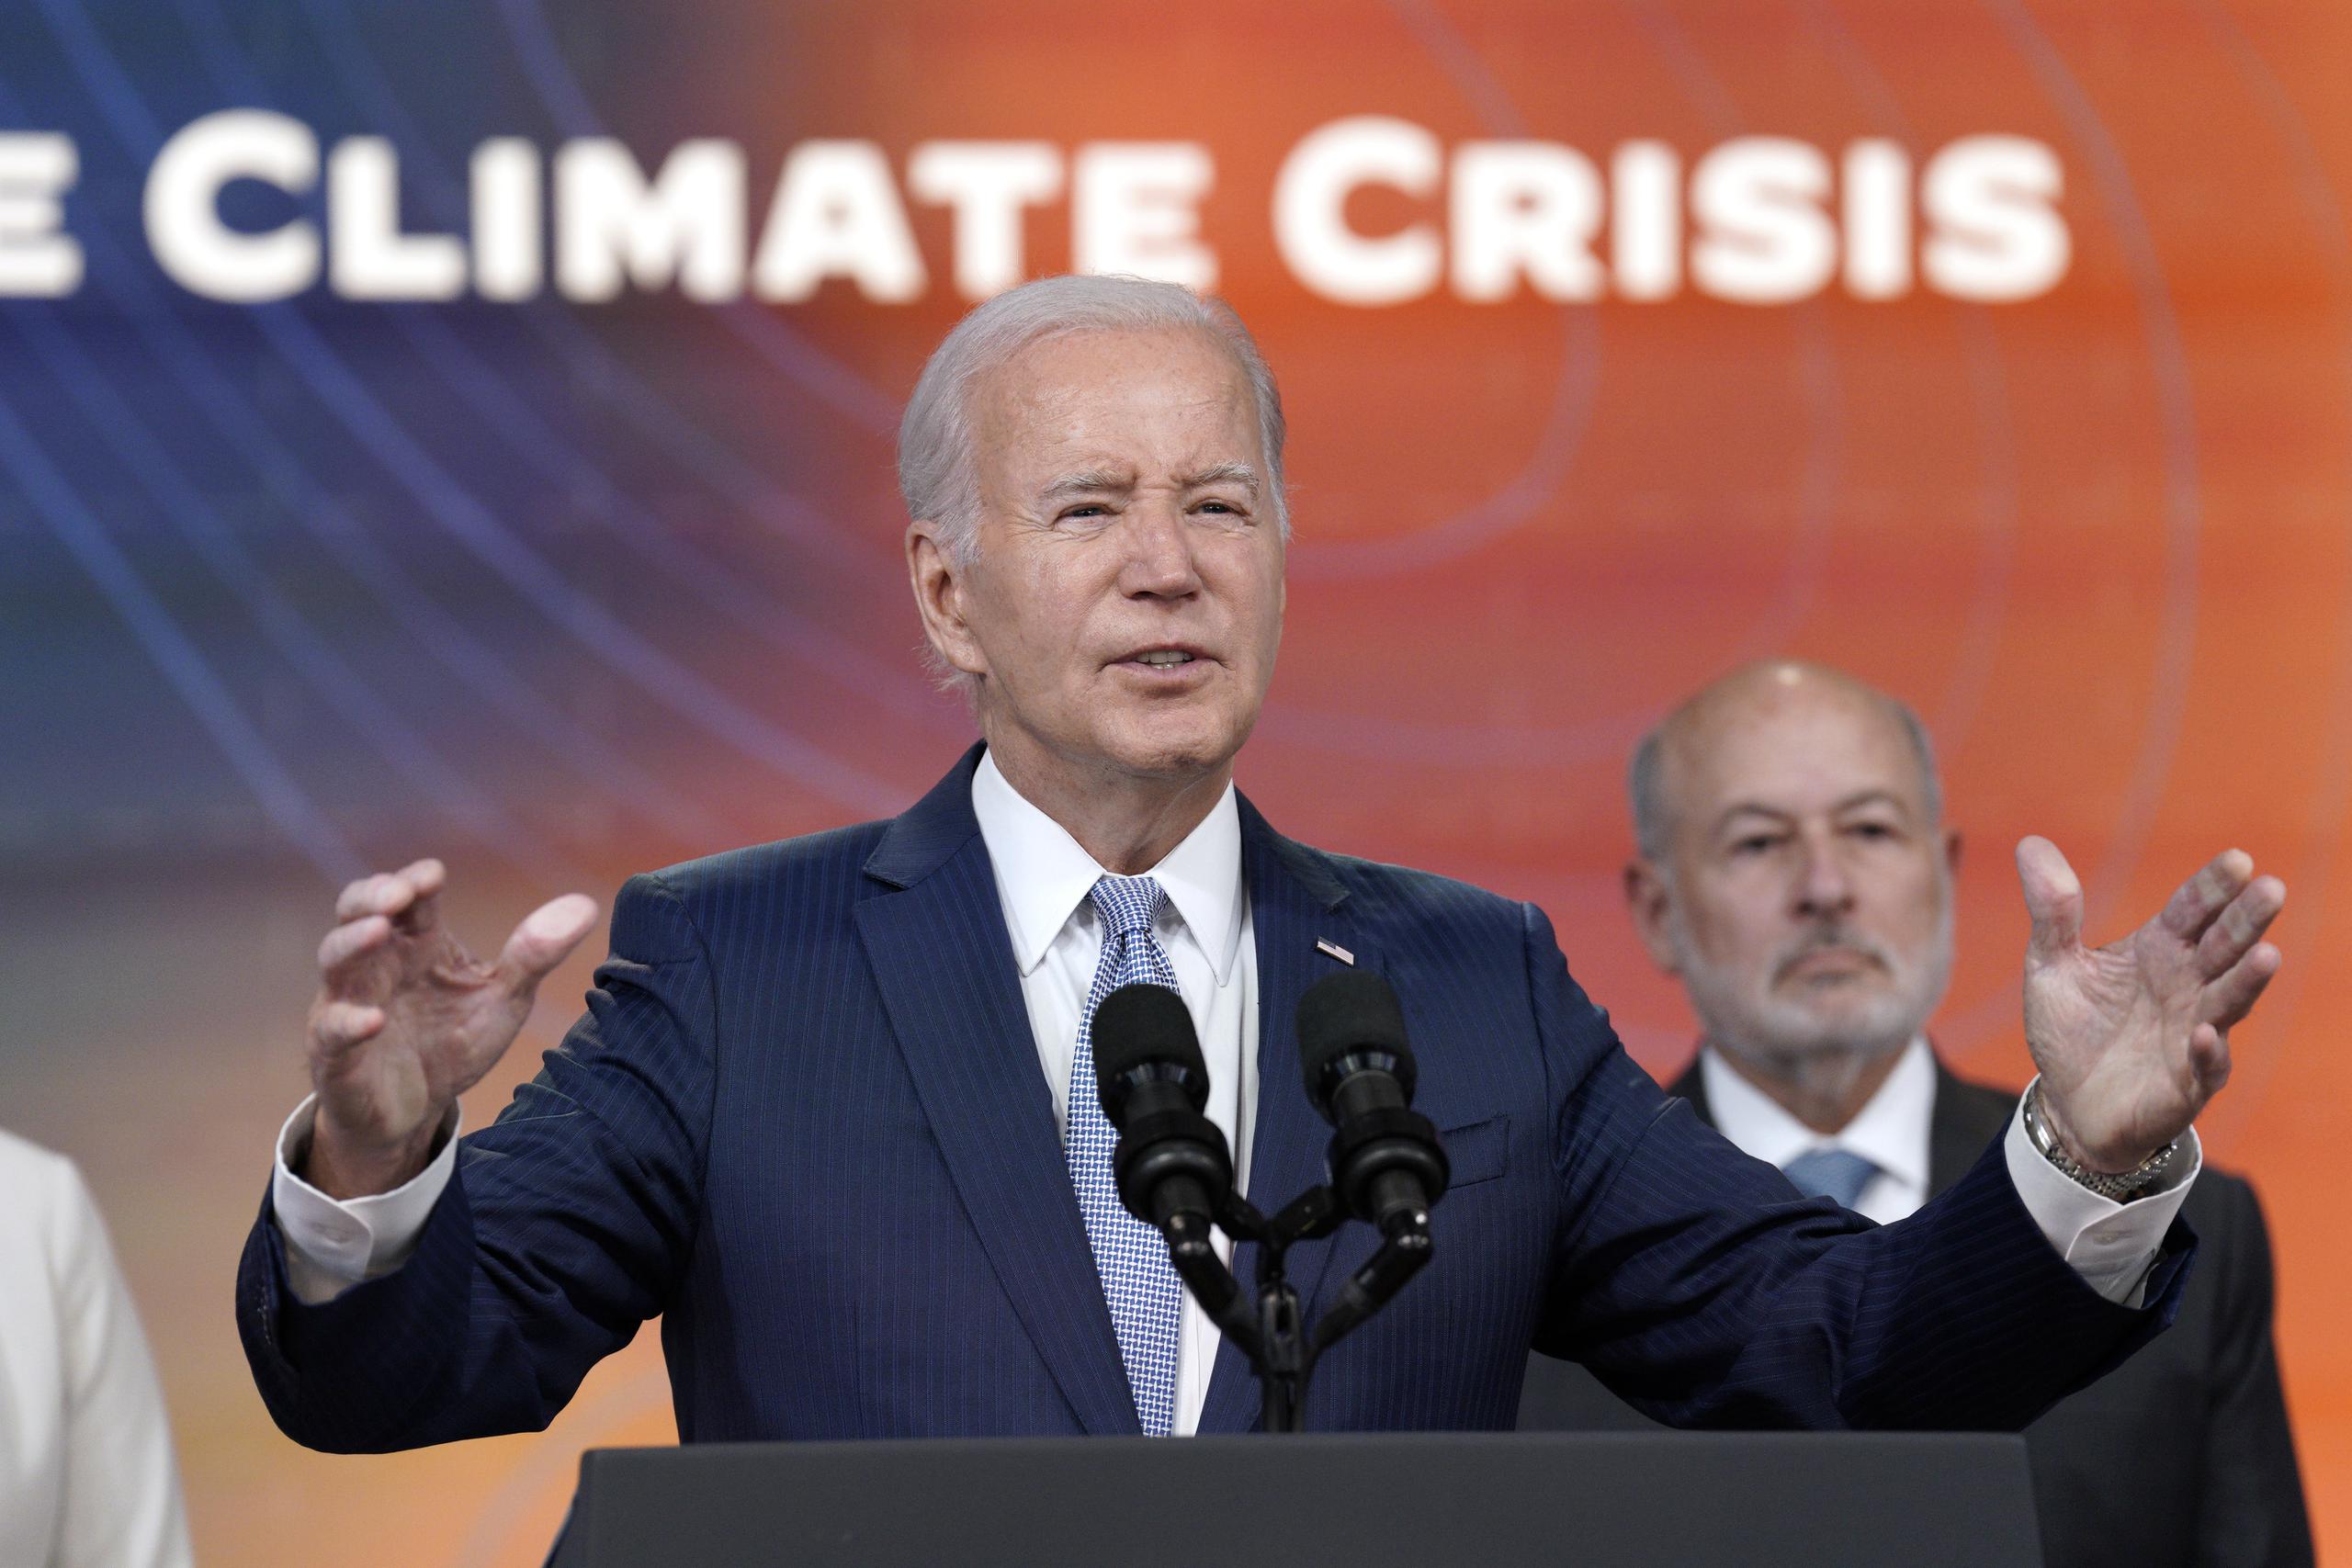 El presidente Joe Biden anunció este jueves una serie de medidas para mitigar el calor extremo, como solicitar al Departamento de Trabajo que emita una "Alerta de Peligro" para garantizar que los trabajadores tengan protección federal frente a las altas temperaturas.